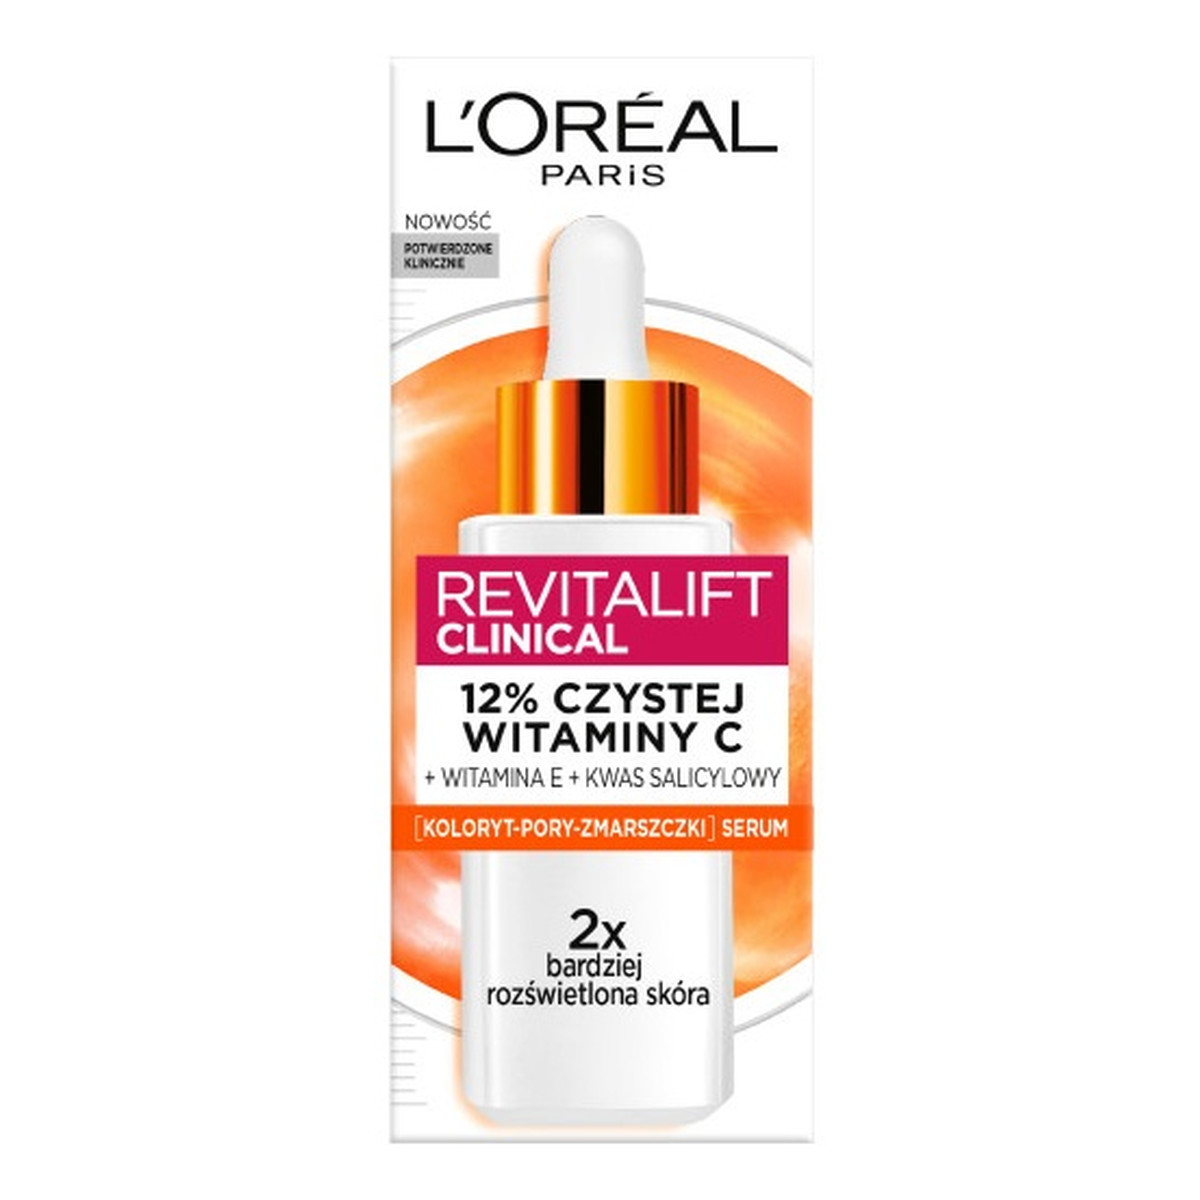 L'Oreal Paris Revitalift clinical rozświetlające serum do twarzy z 12% czystej witaminy c 30ml